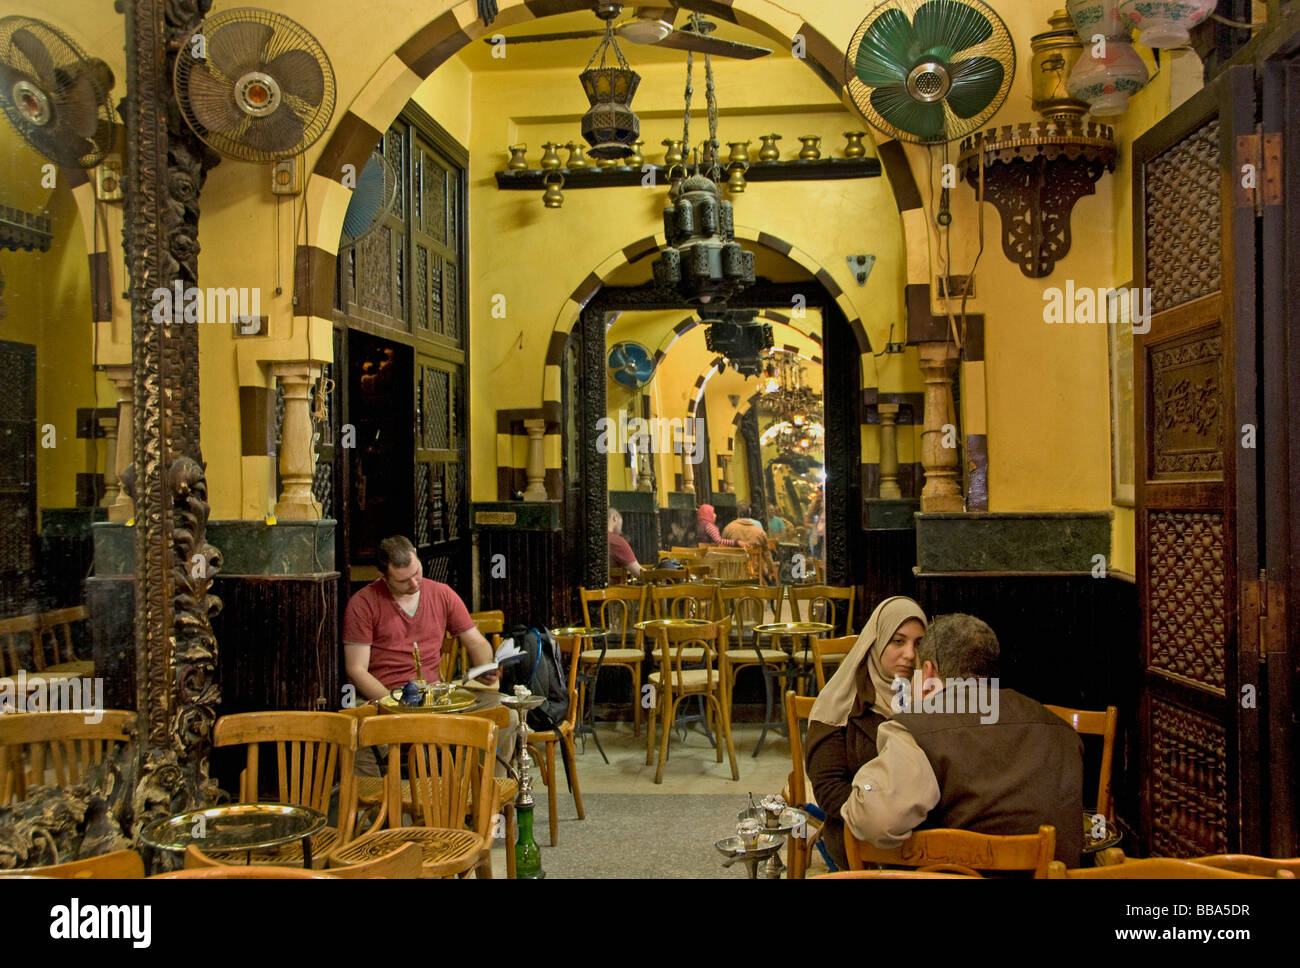 Midan al hussein coffee house Khan el Khalili Cairo Islamico Egitto Bazaar Souk souk Djaharks emiro el-Khalili caravanserai Foto Stock